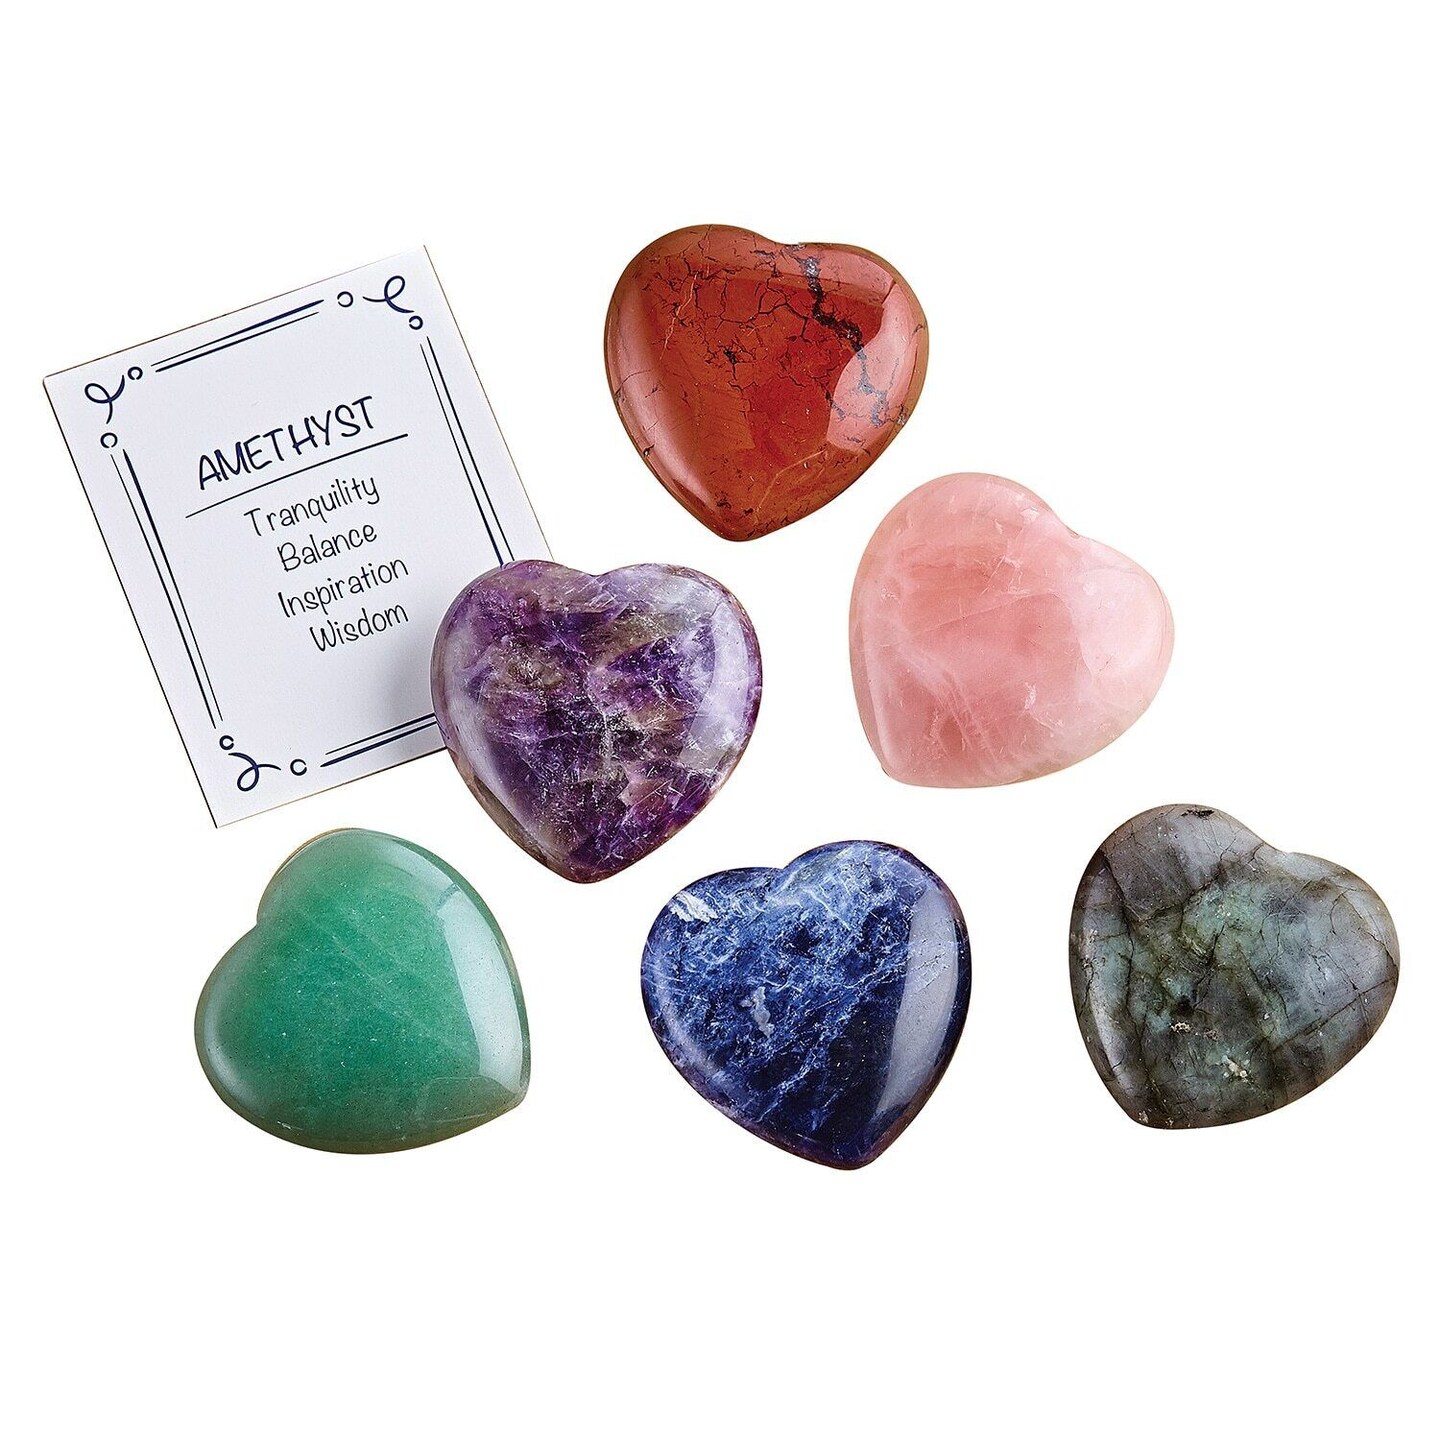 Precious Gem Stone Small Crystal Heart Stones 6 pcs